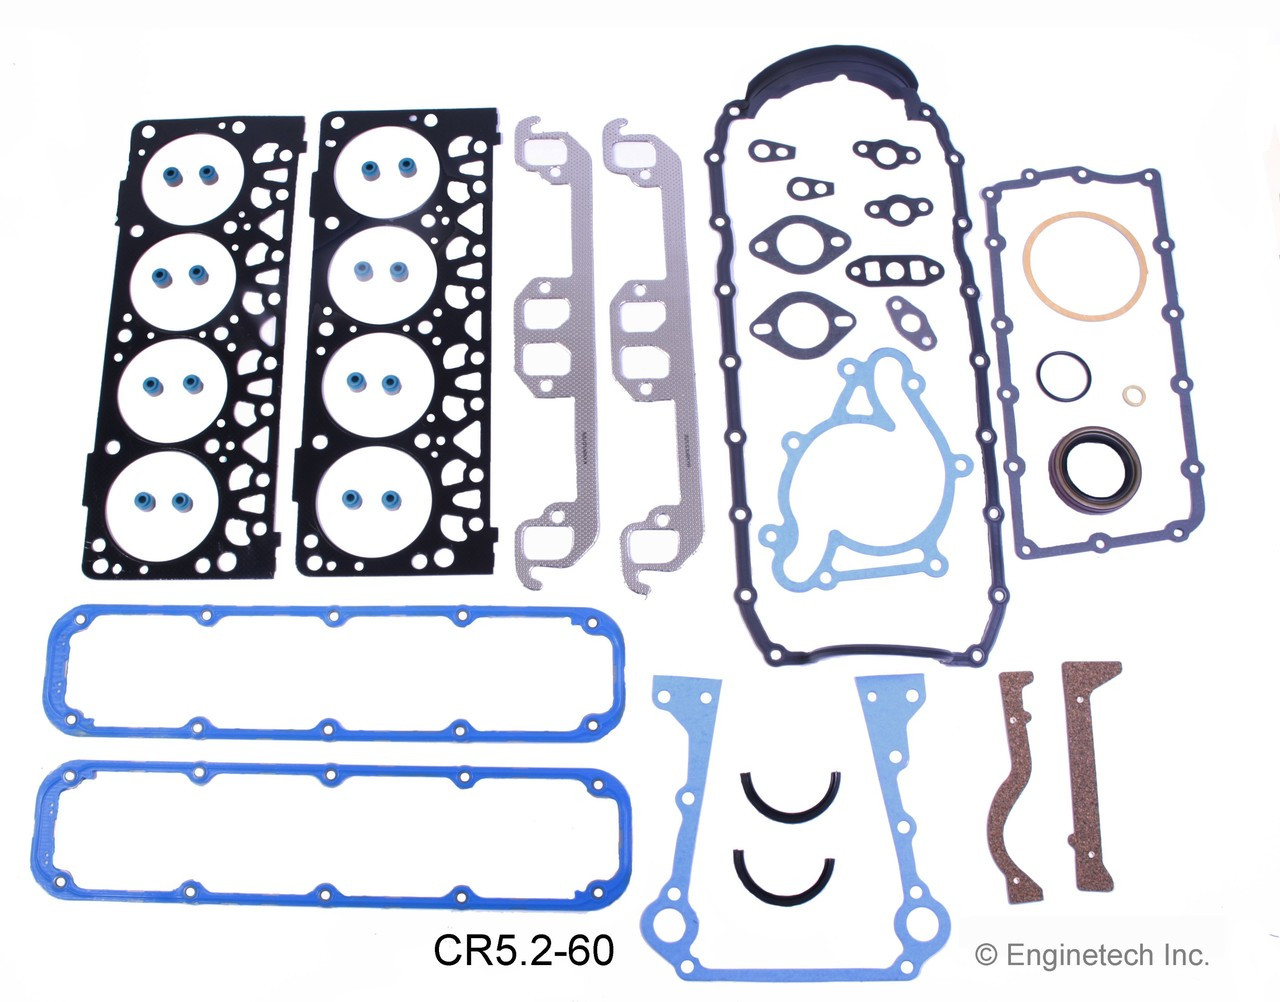 Engine Gasket Set - Kit Part - CR5.2-60